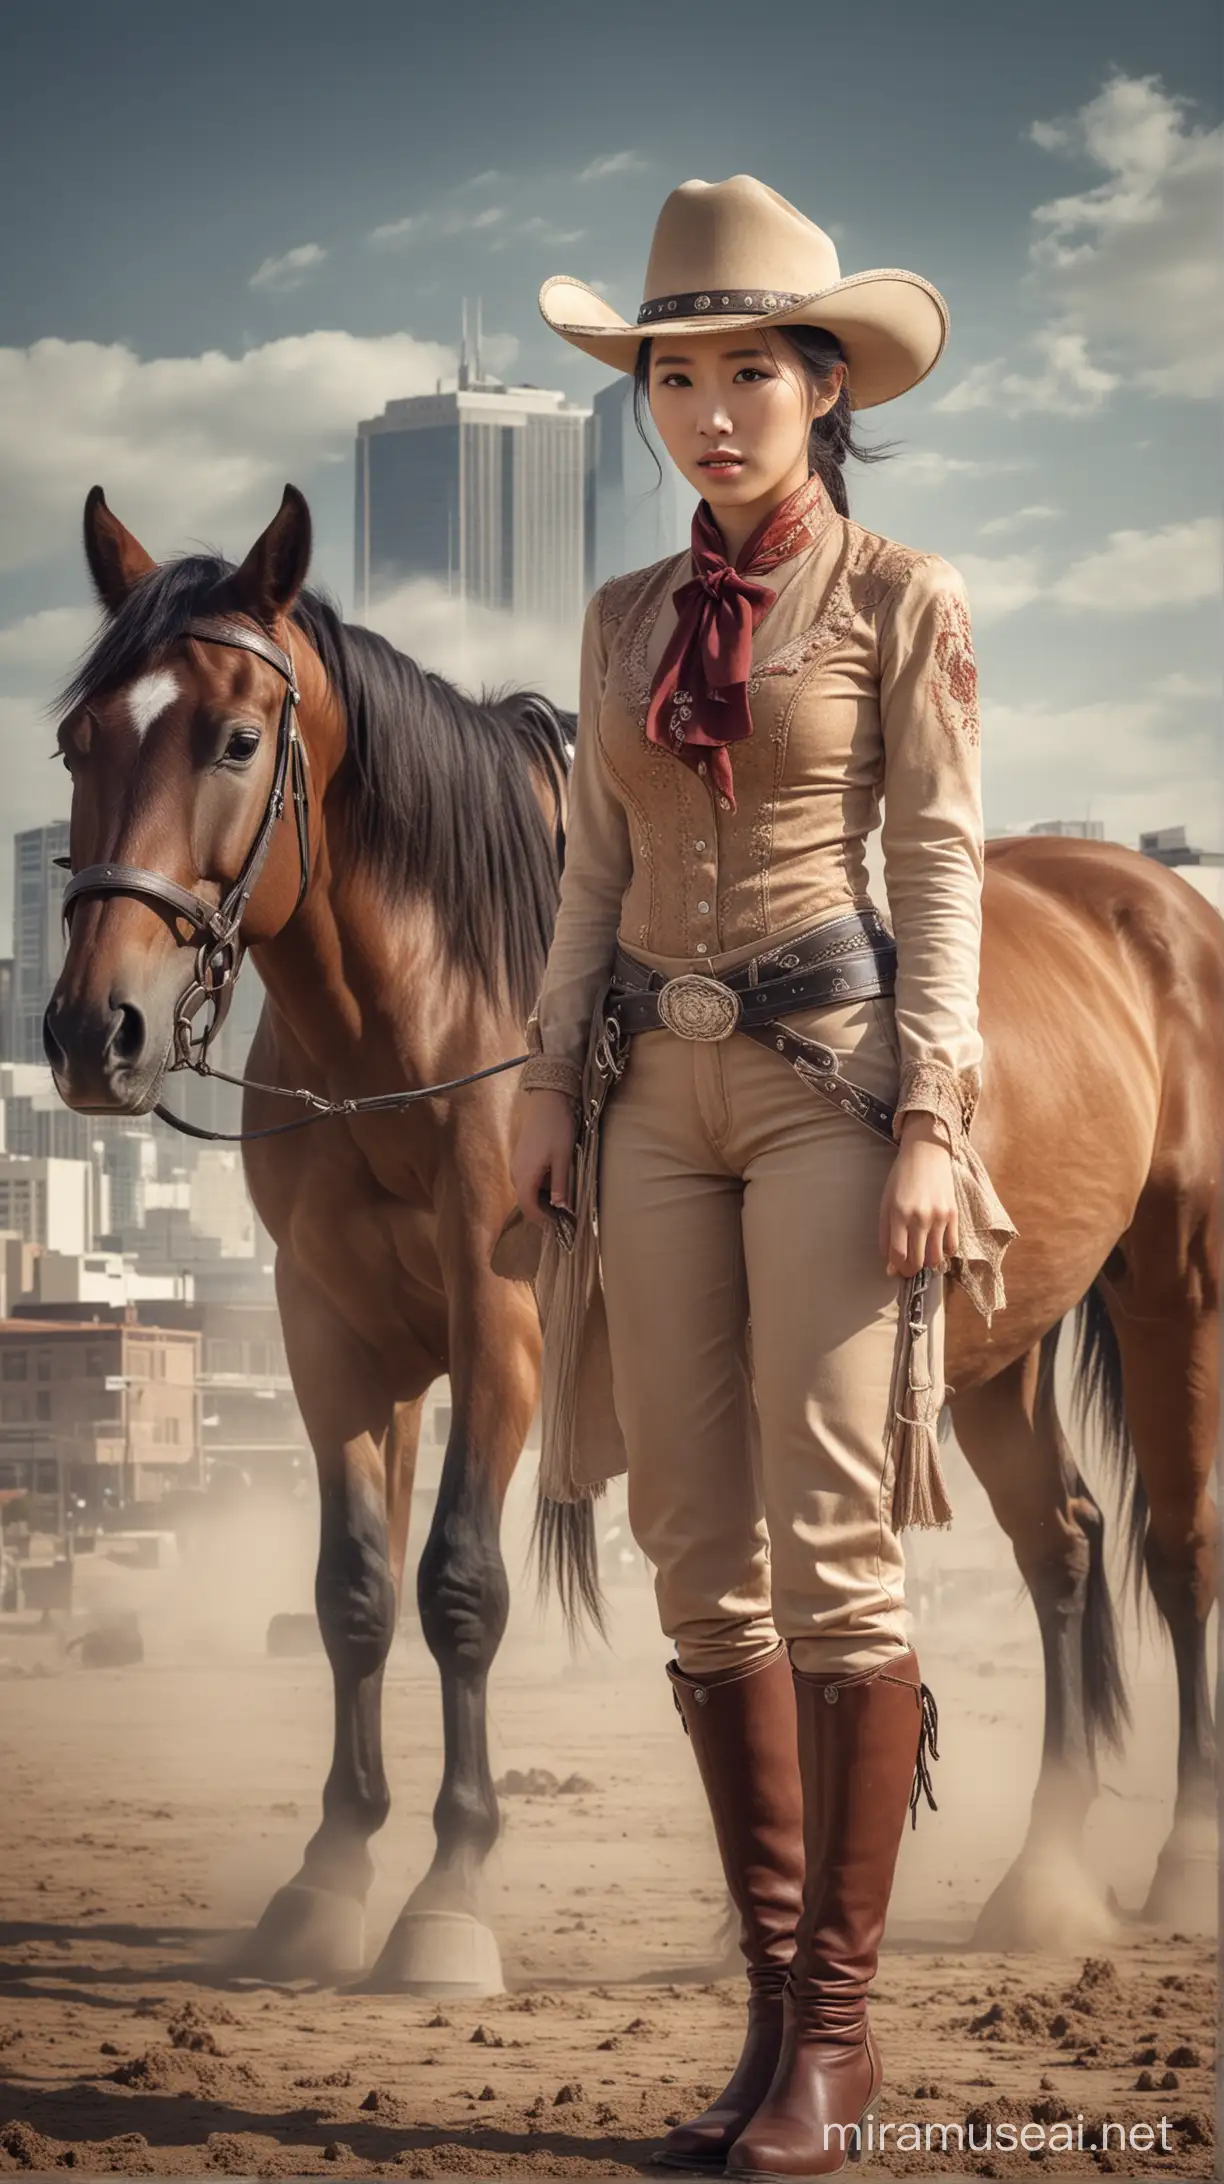 Seorang wanita Korea cantik, memakai pakaian koboi lengkap dengan topinya, sedang berdiri di samping seekor kuda, background kota Texas,efek debu tertiup angin, realistis ultra HDR extreme 